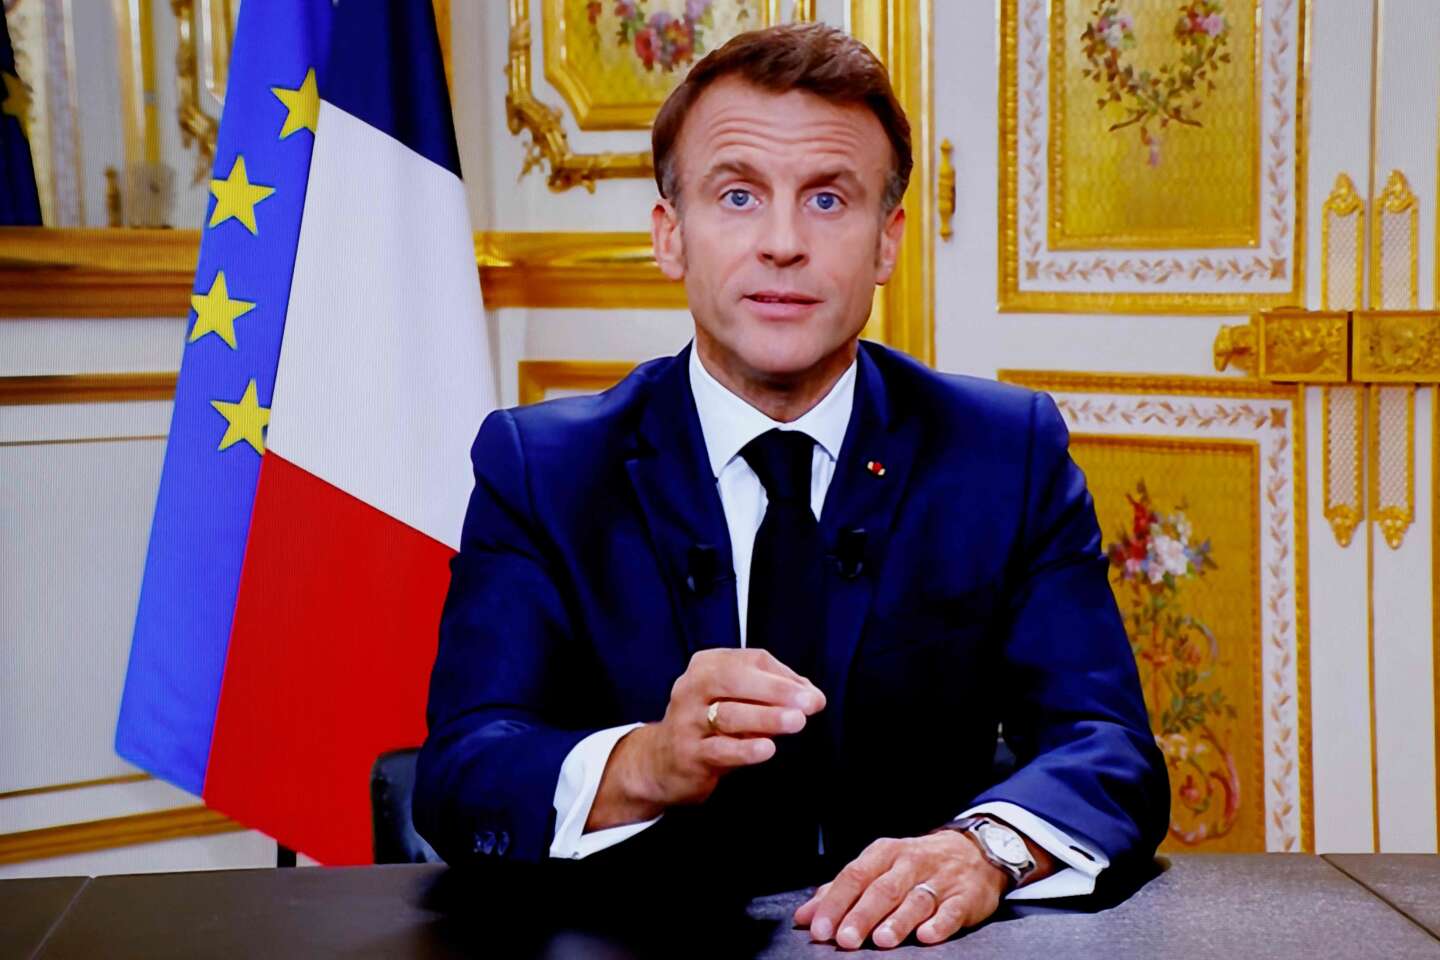 Allocution d’Emmanuel Macron : un appel à l’unité indispensable